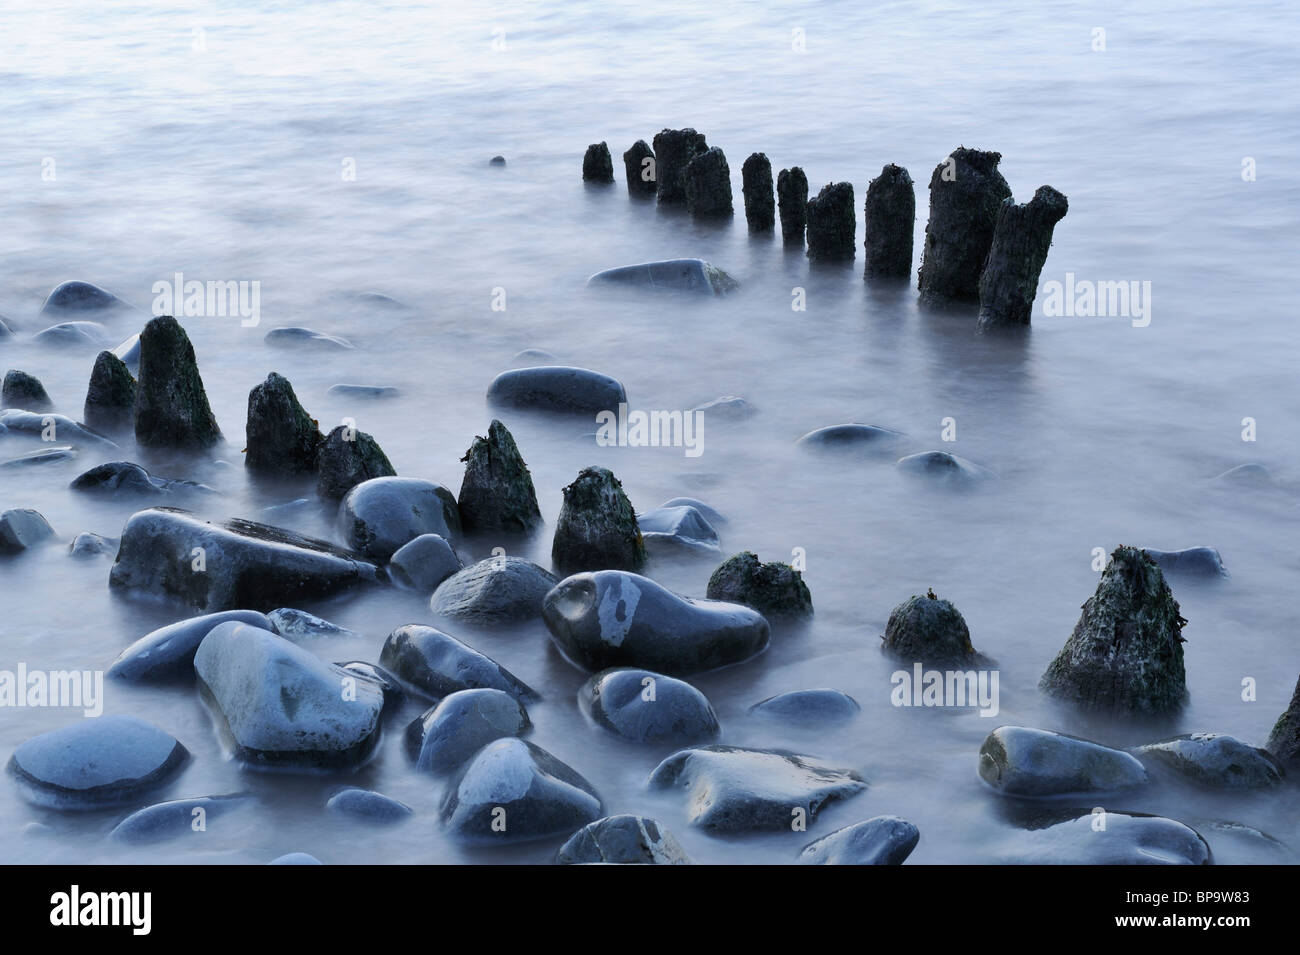 Un abstract di rocce e pennelli in legno sulla spiaggia Lilstock, Somerset. Una lenta velocità di otturatore causato l'acqua per sfocare pesantemente. Foto Stock